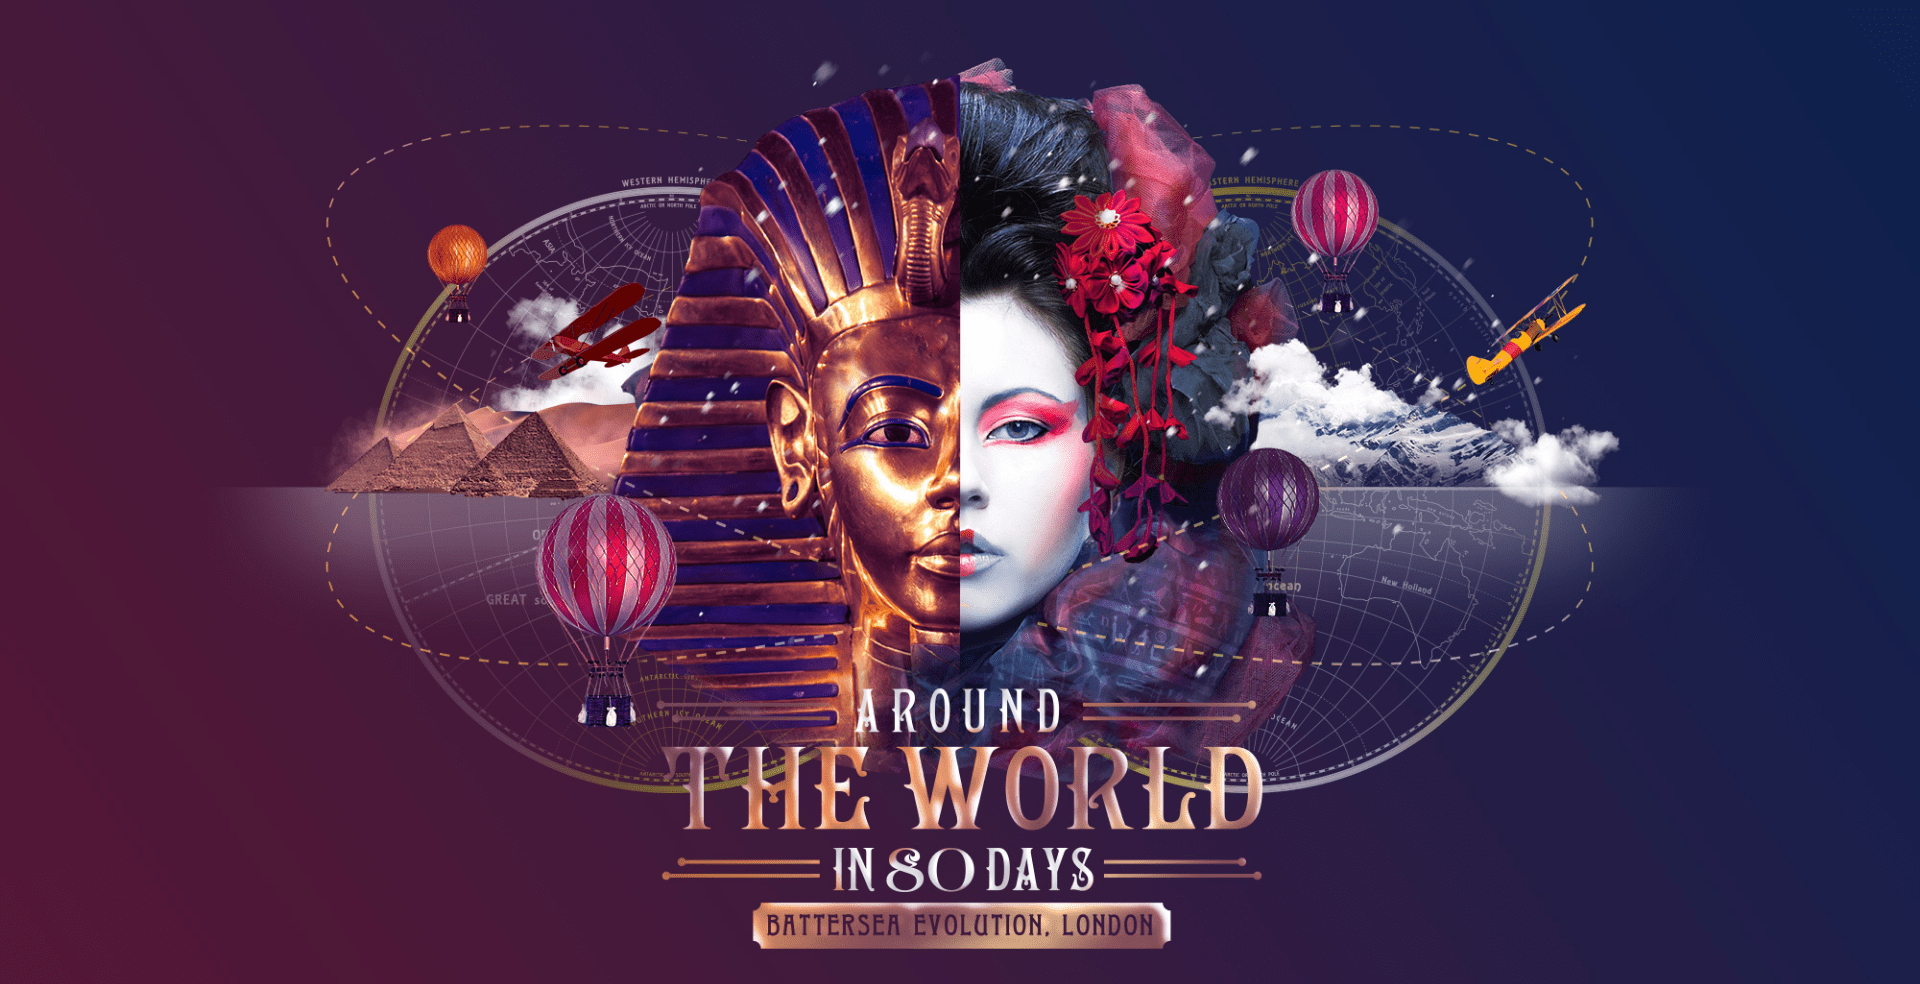 Around the World in 80 days